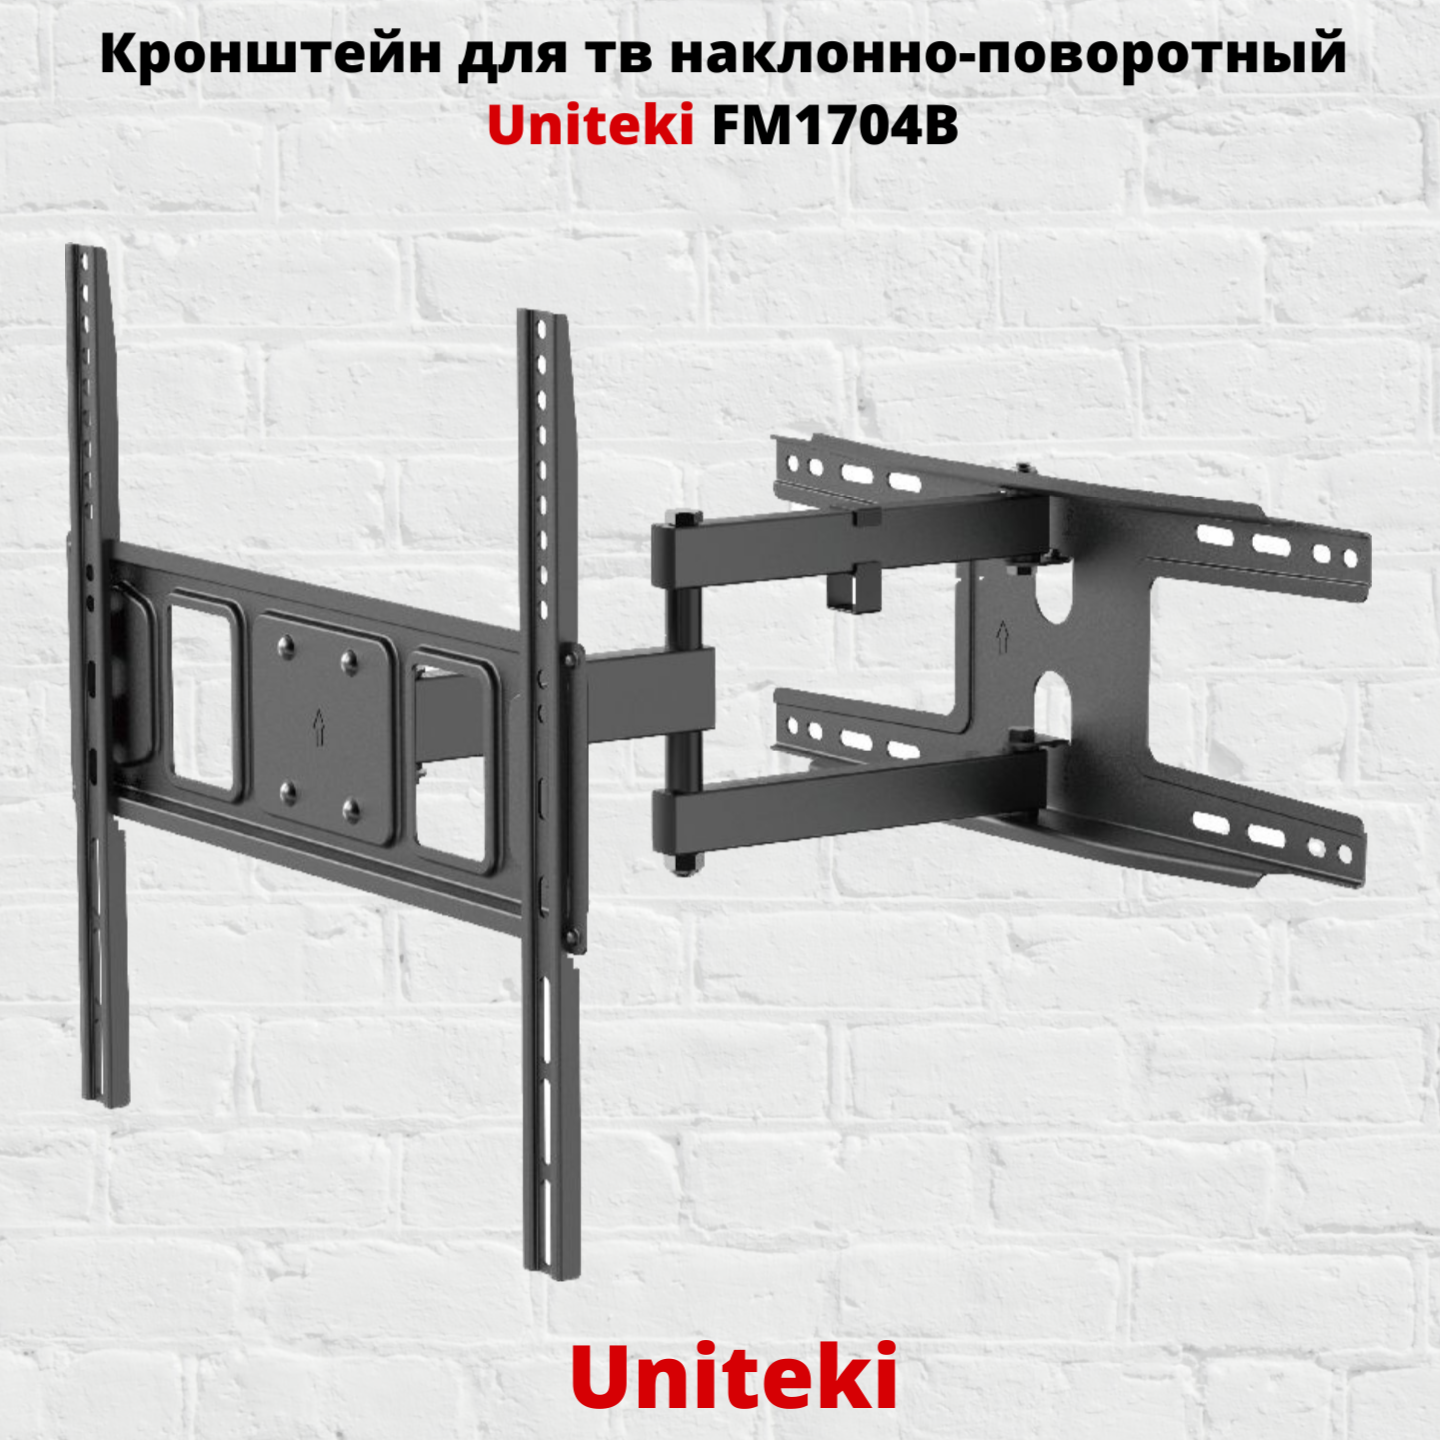 Наклонно-поворотный кронштейн для телевизора Uniteki FM1704B 32-55 черный